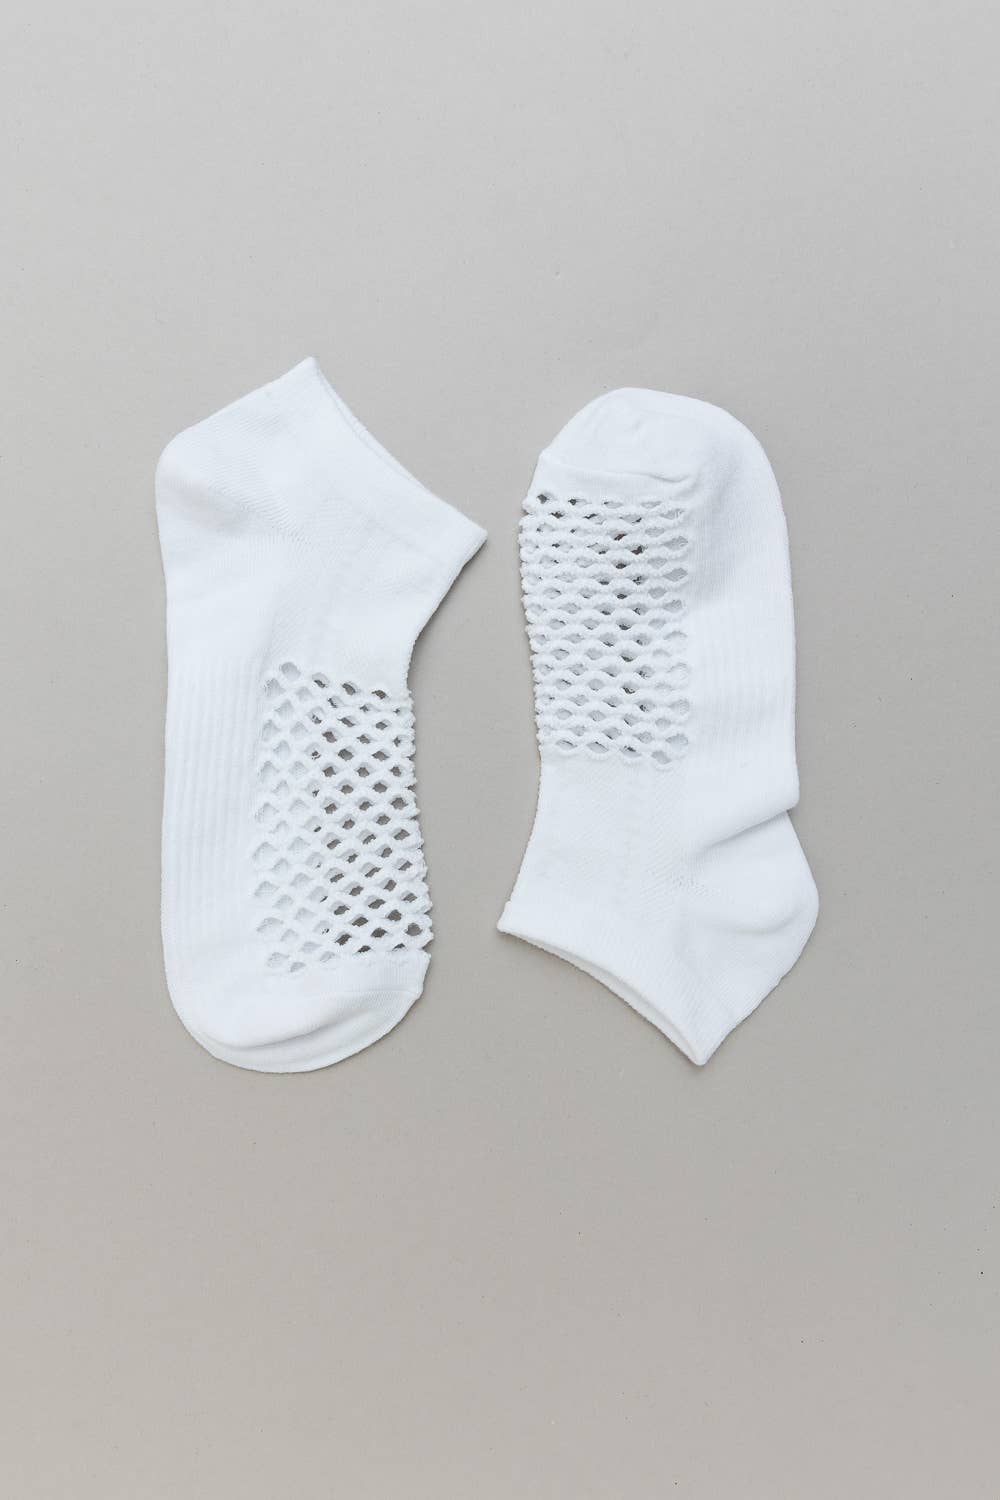 Fishnet Hollow Seamless Socks